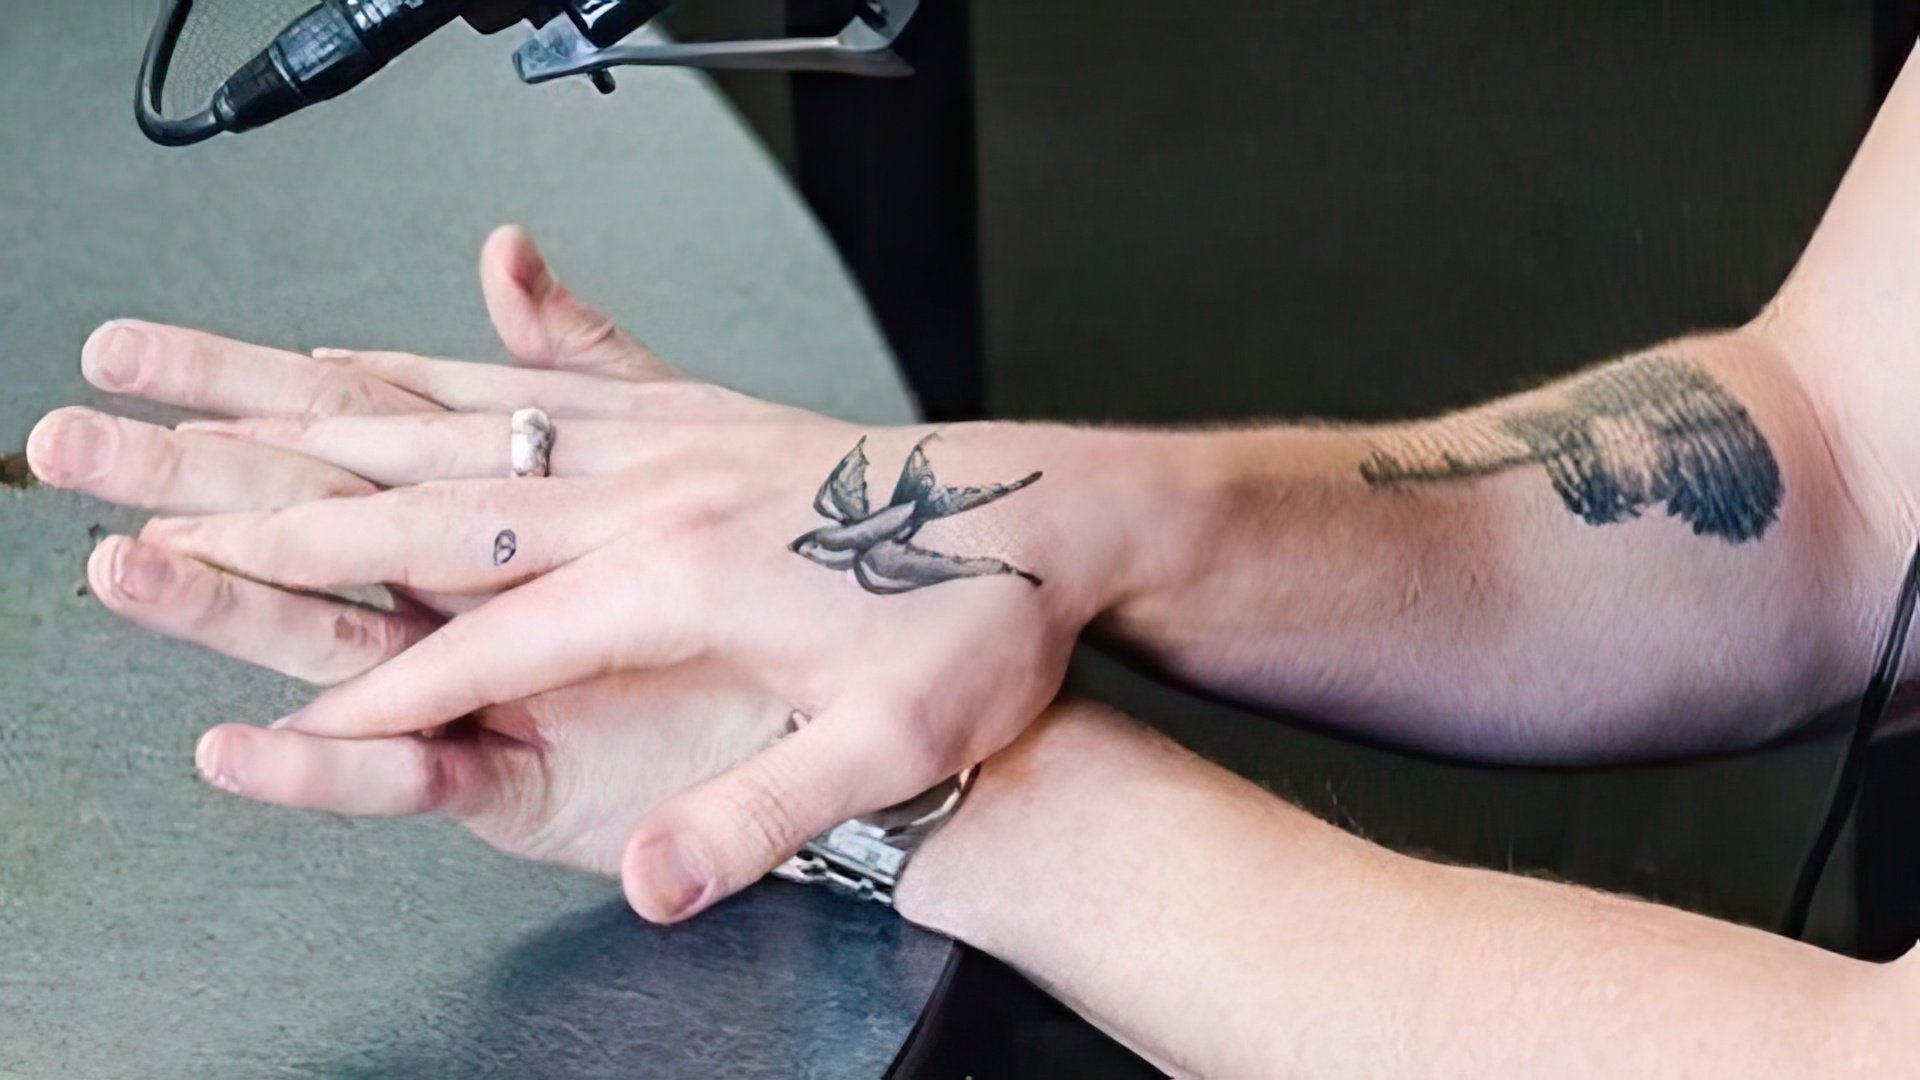 Shawn Mendes’s tattoo